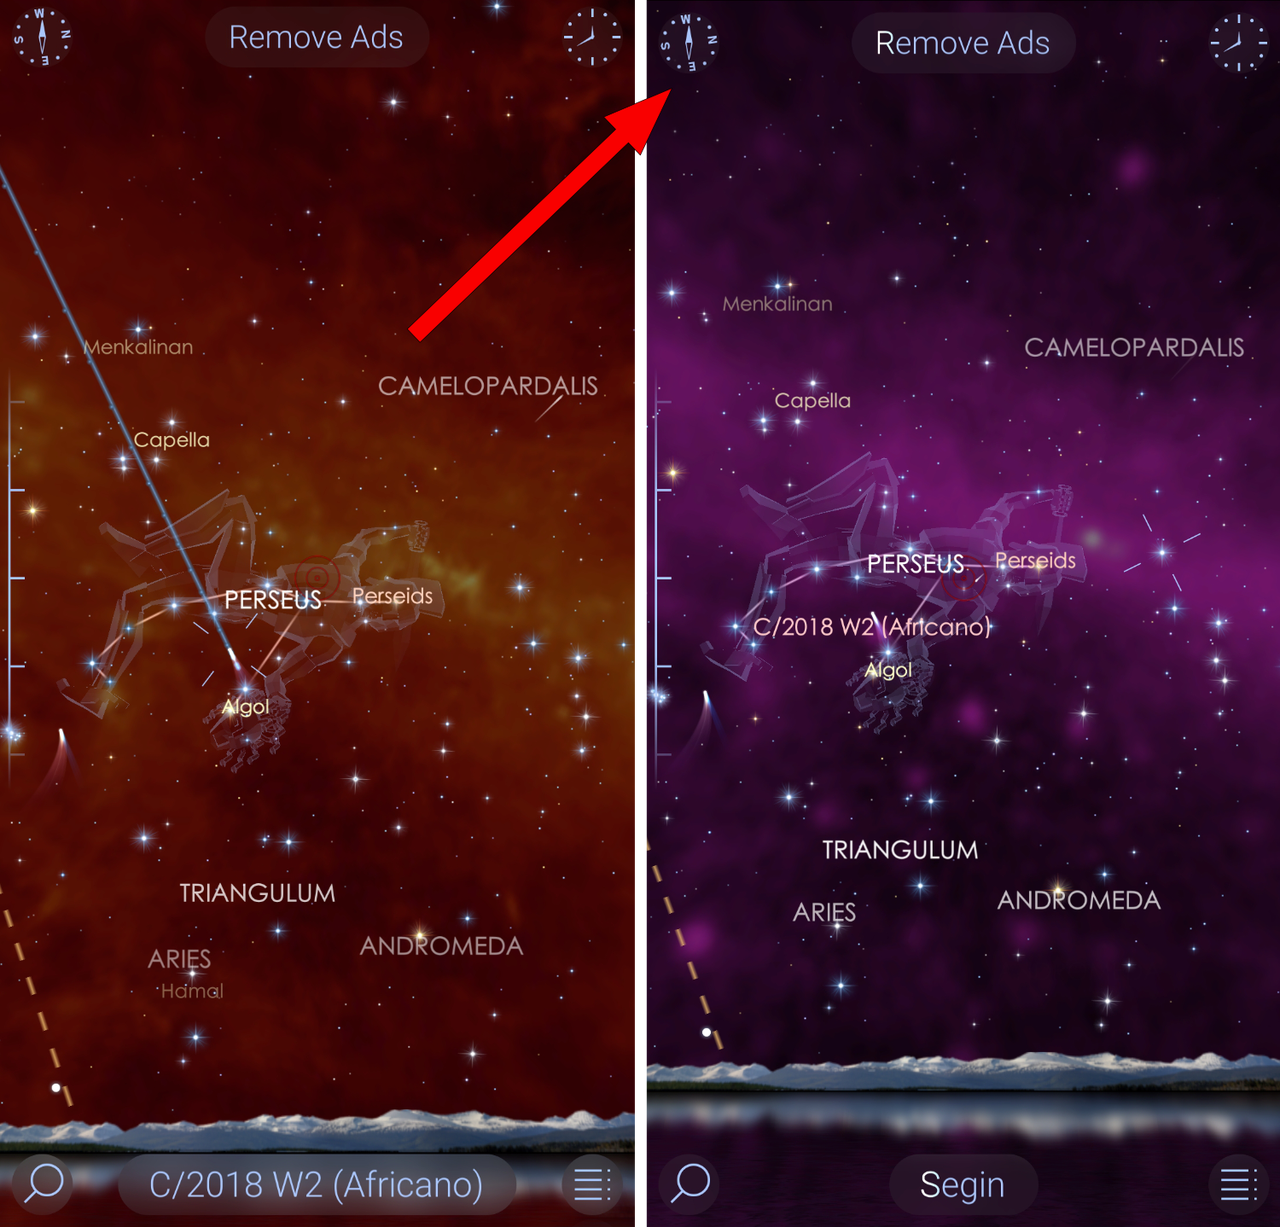 Star Walk 2 pozwala oglądać mapę nieba także w częstotliwościach, których nie widzimy – promieniowanie rentgenowskie, gamma, podczerwień czy mikrofale